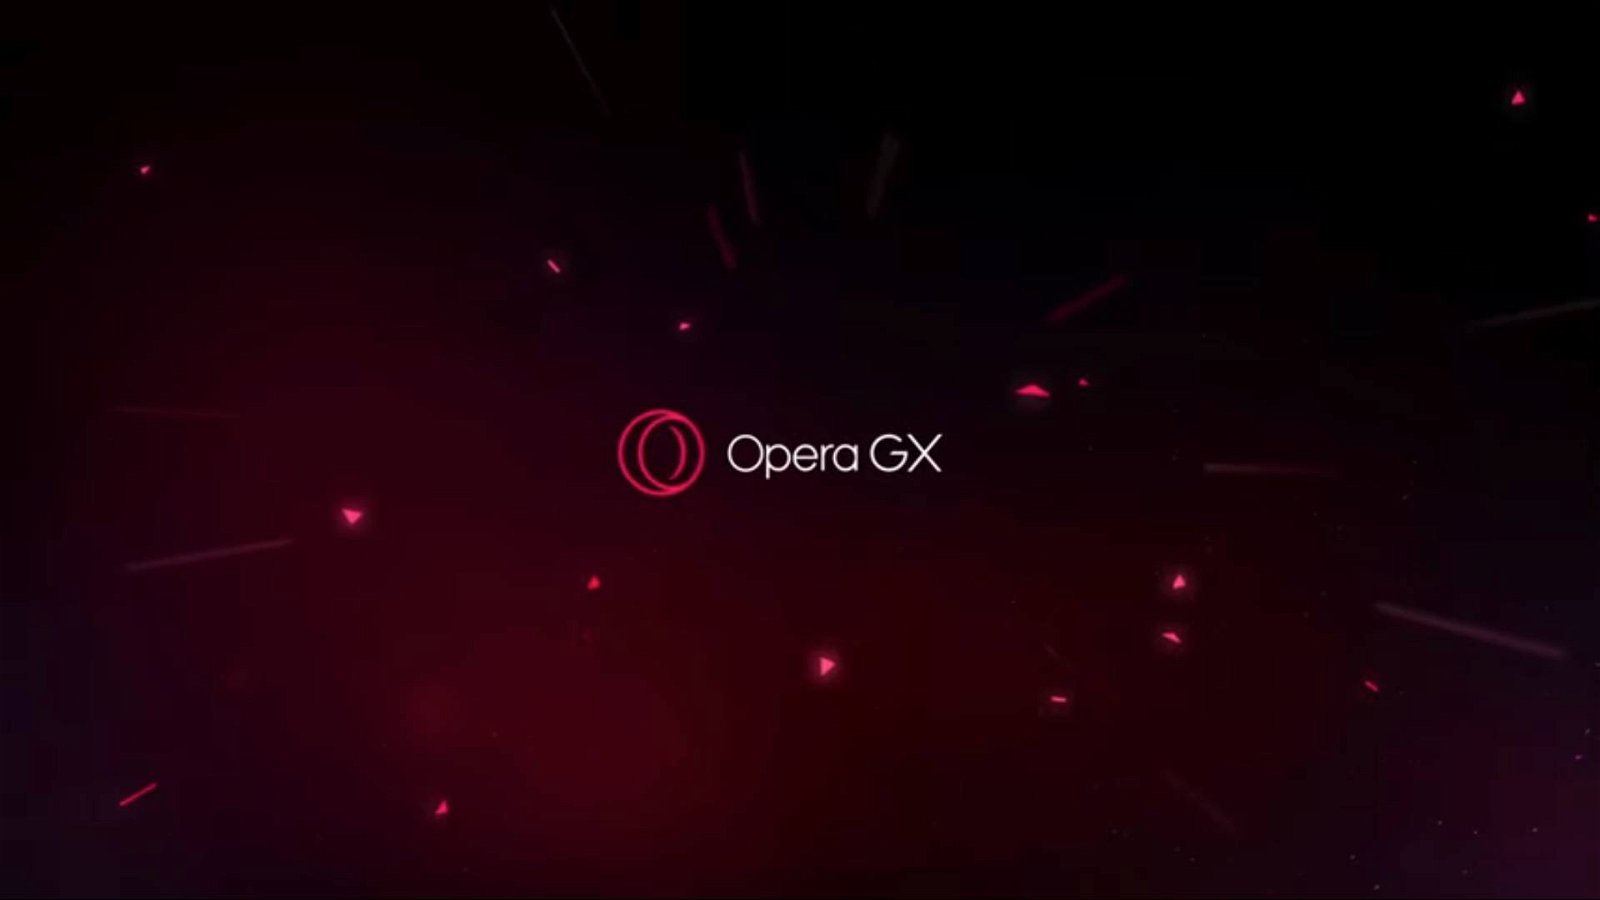 Immagine di Opera GX, il browser "gaming" ora integra anche Discord, Telegram, Messenger e Whatsapp